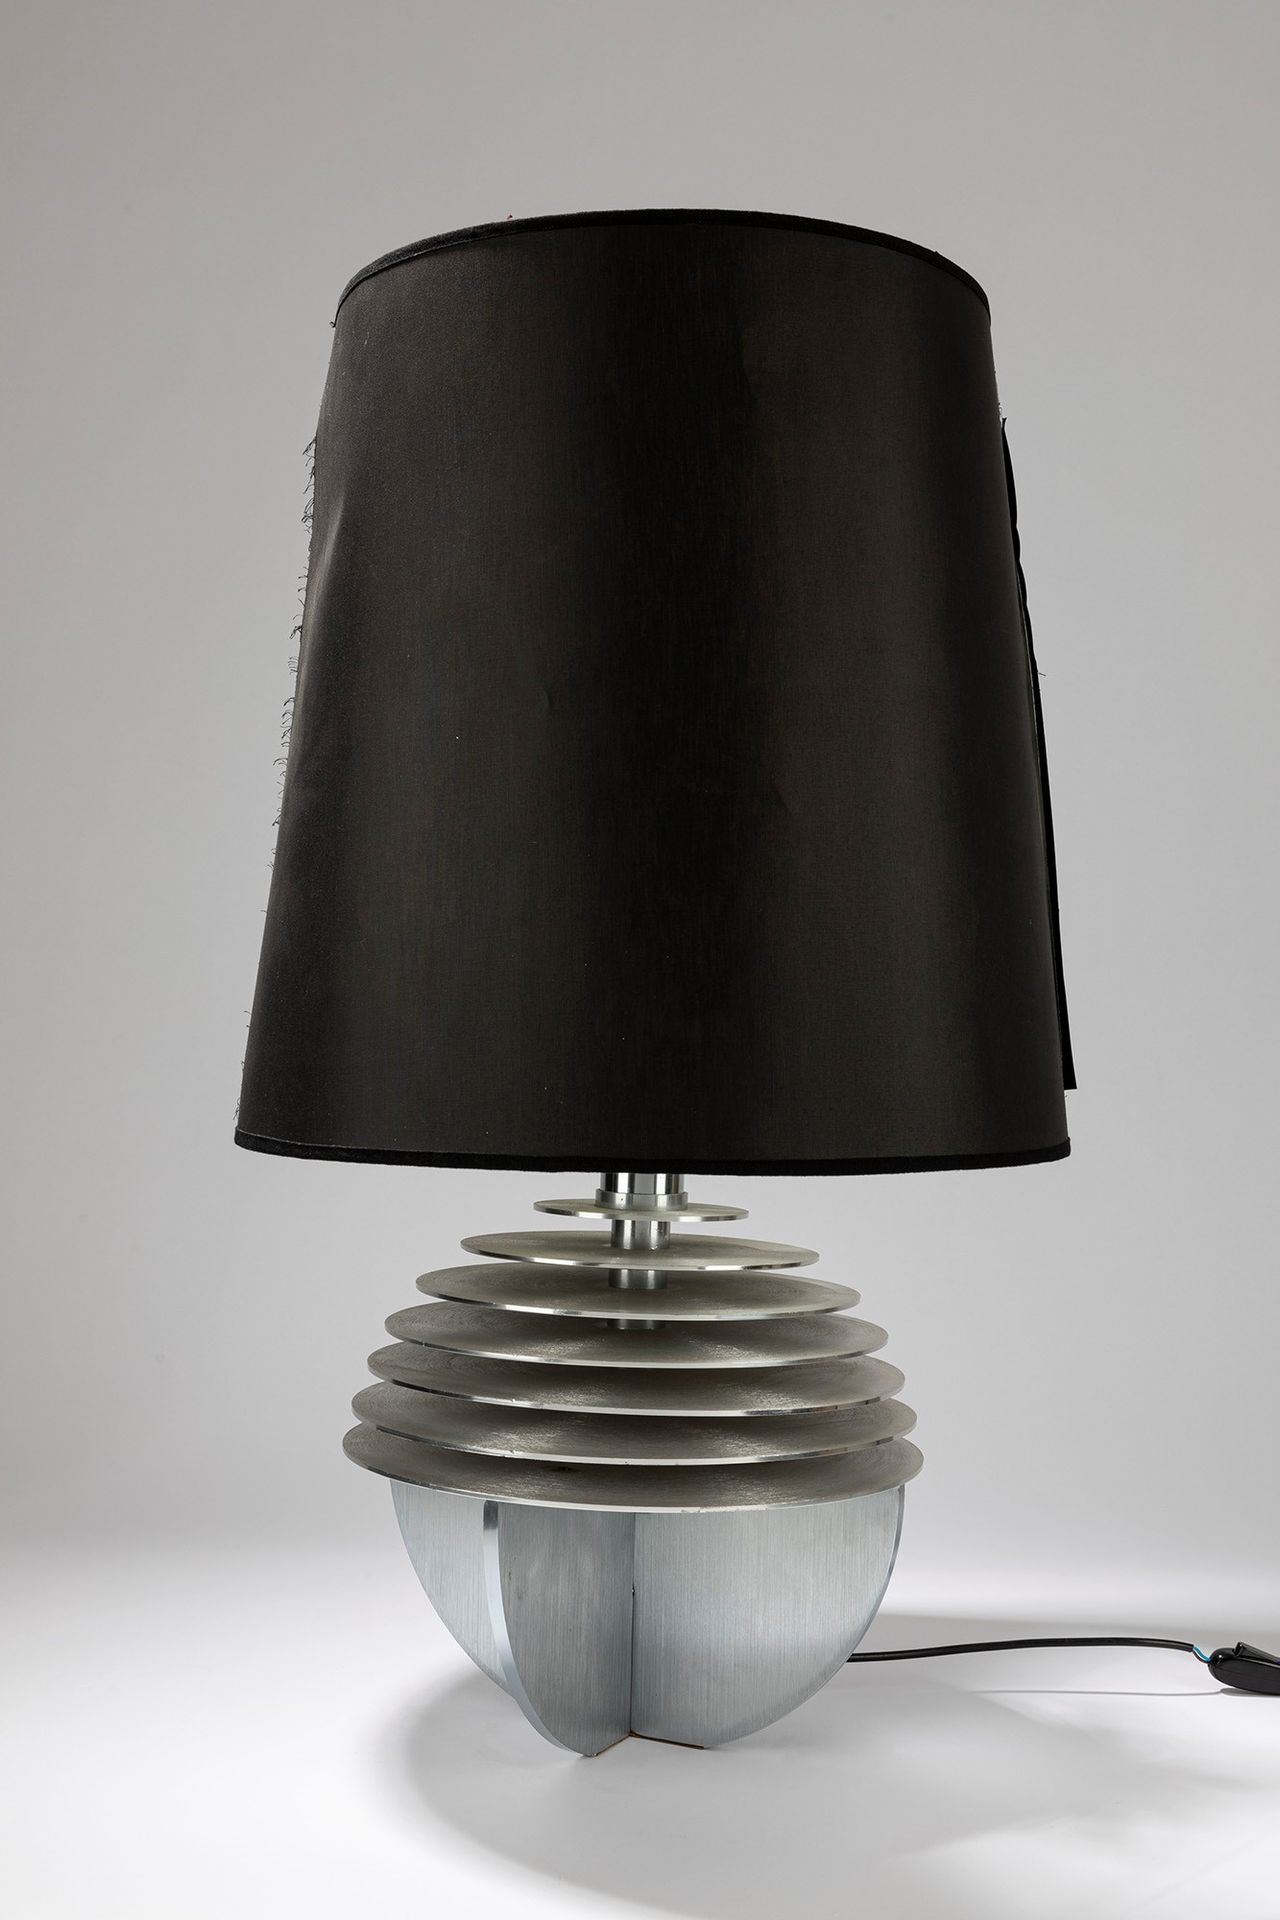 ITALIAN MANUFACTURE Lampe de table, 1970 ca.

Cm h 84,5 x 40
métal.